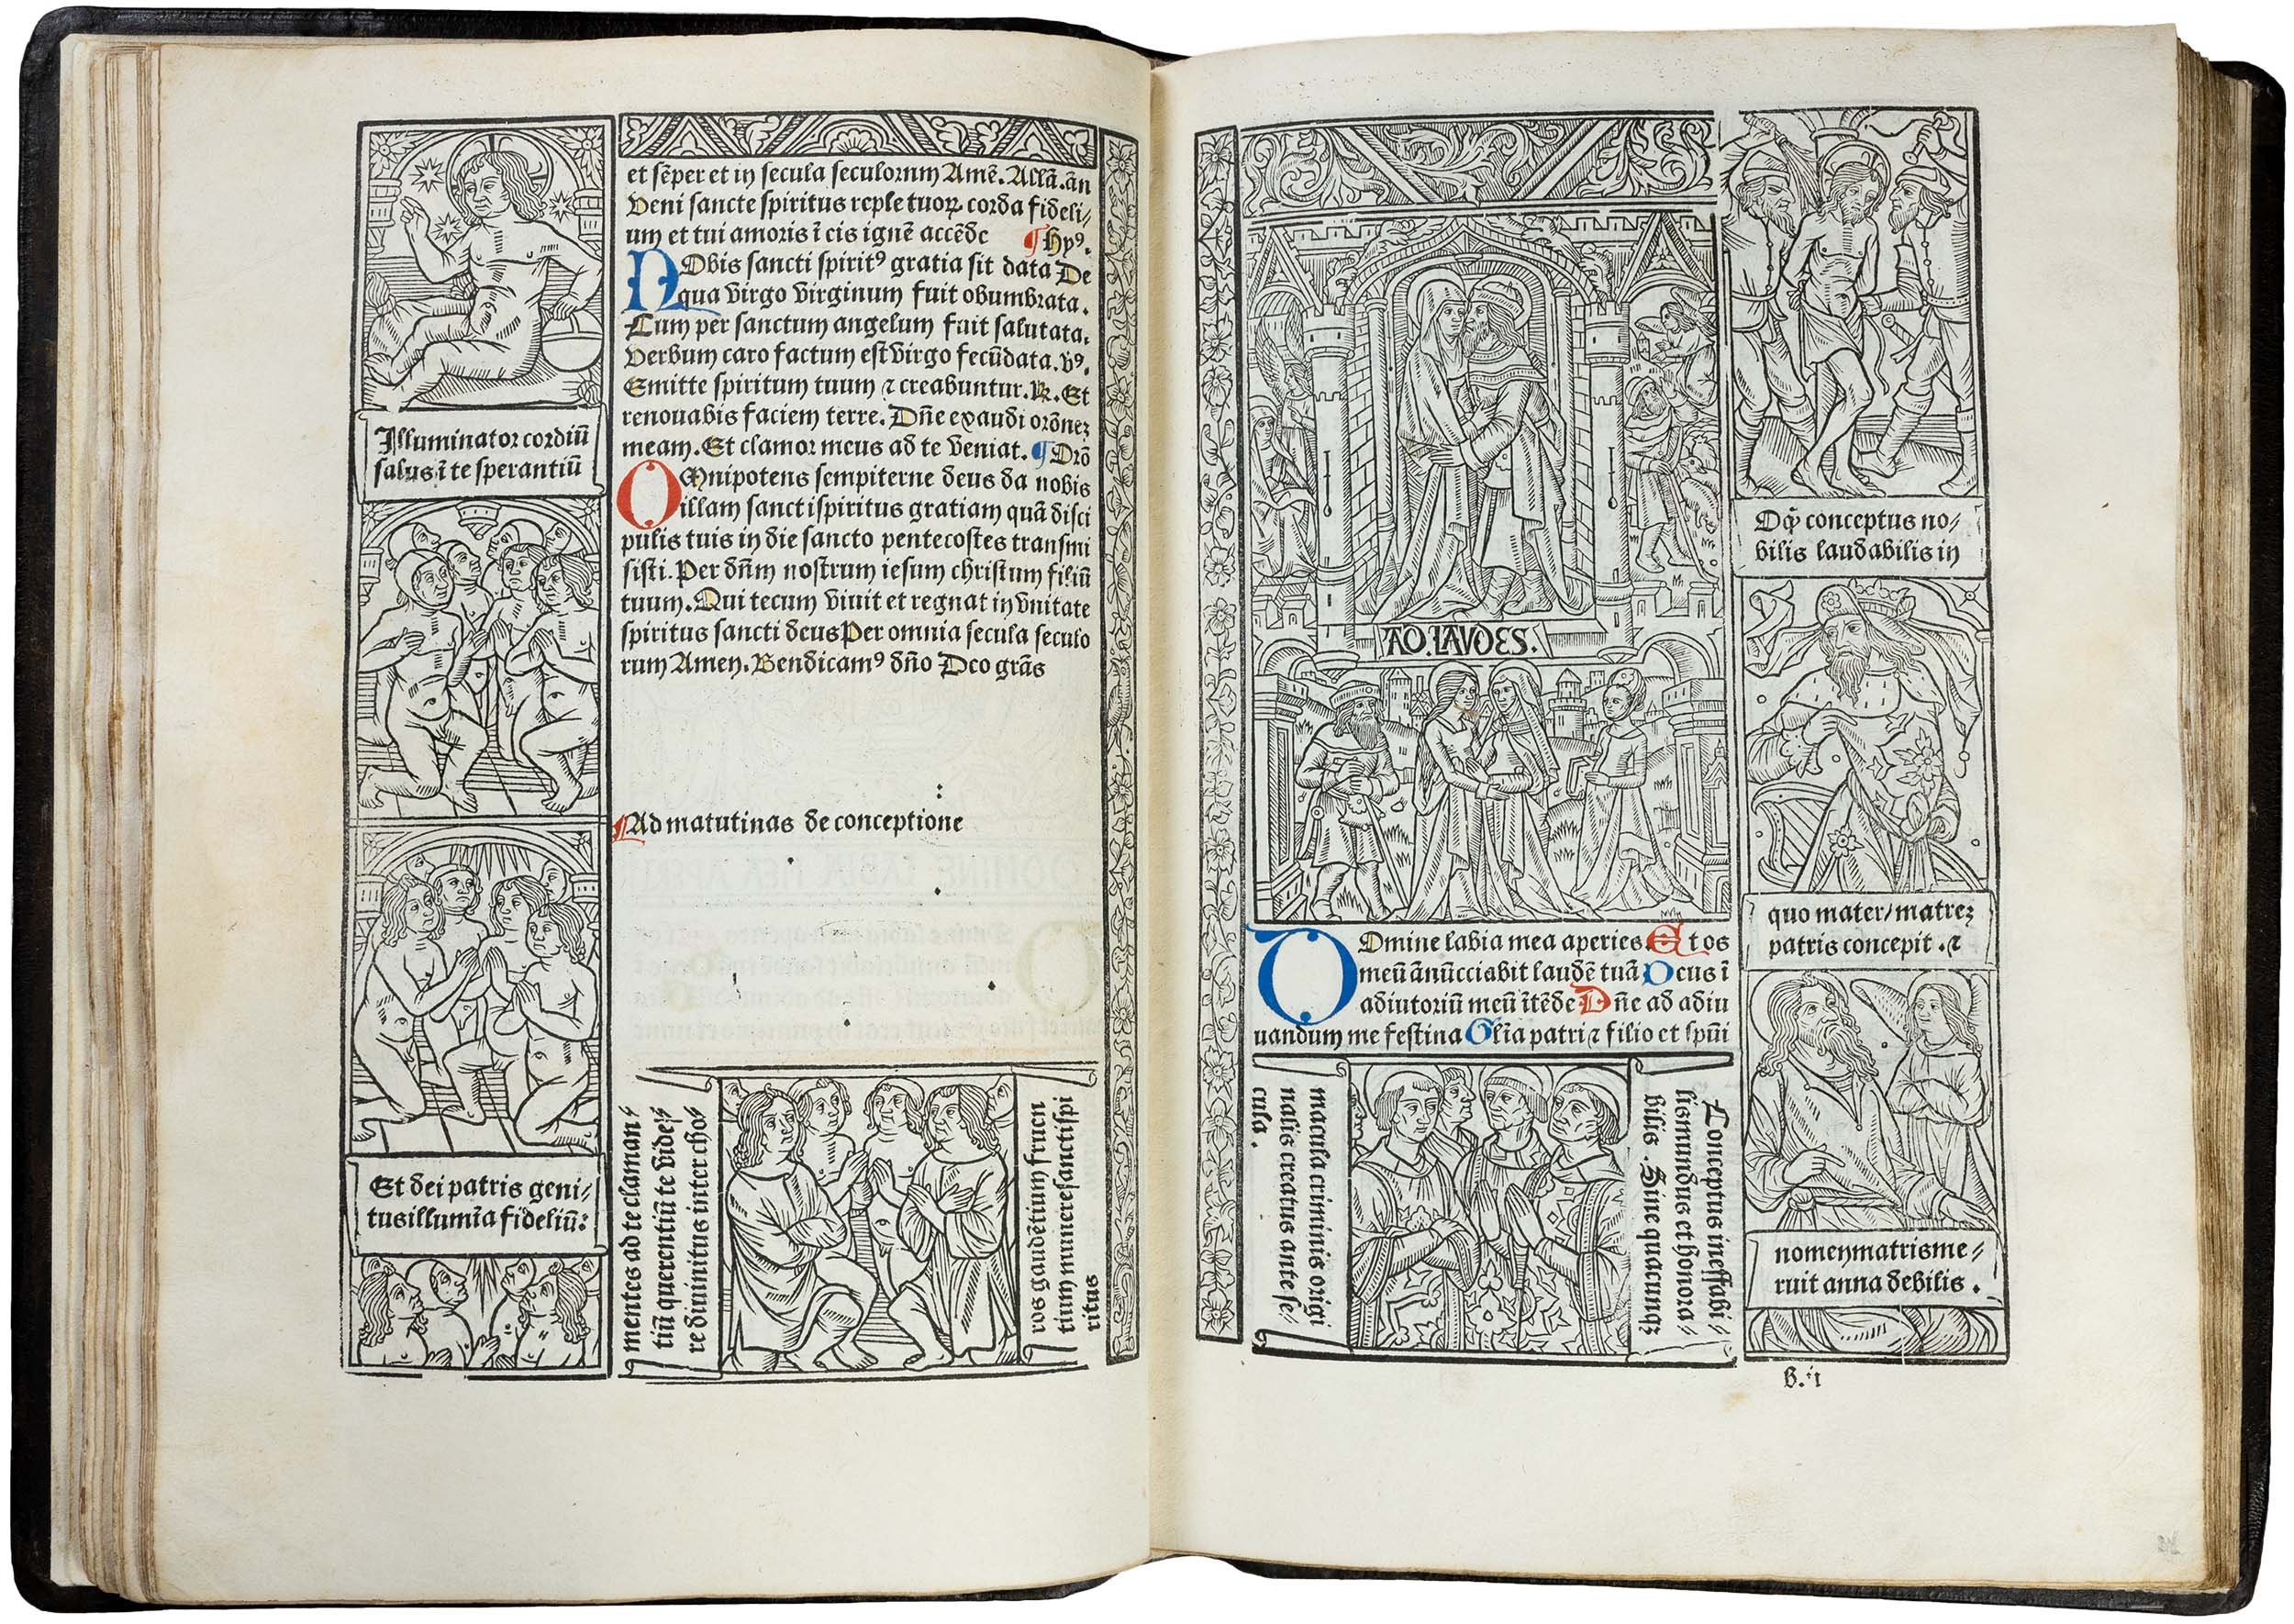 Grandes-heures-royales-verard-1488-1489-printed-book-of-hours-horae-bmv-29.jpg